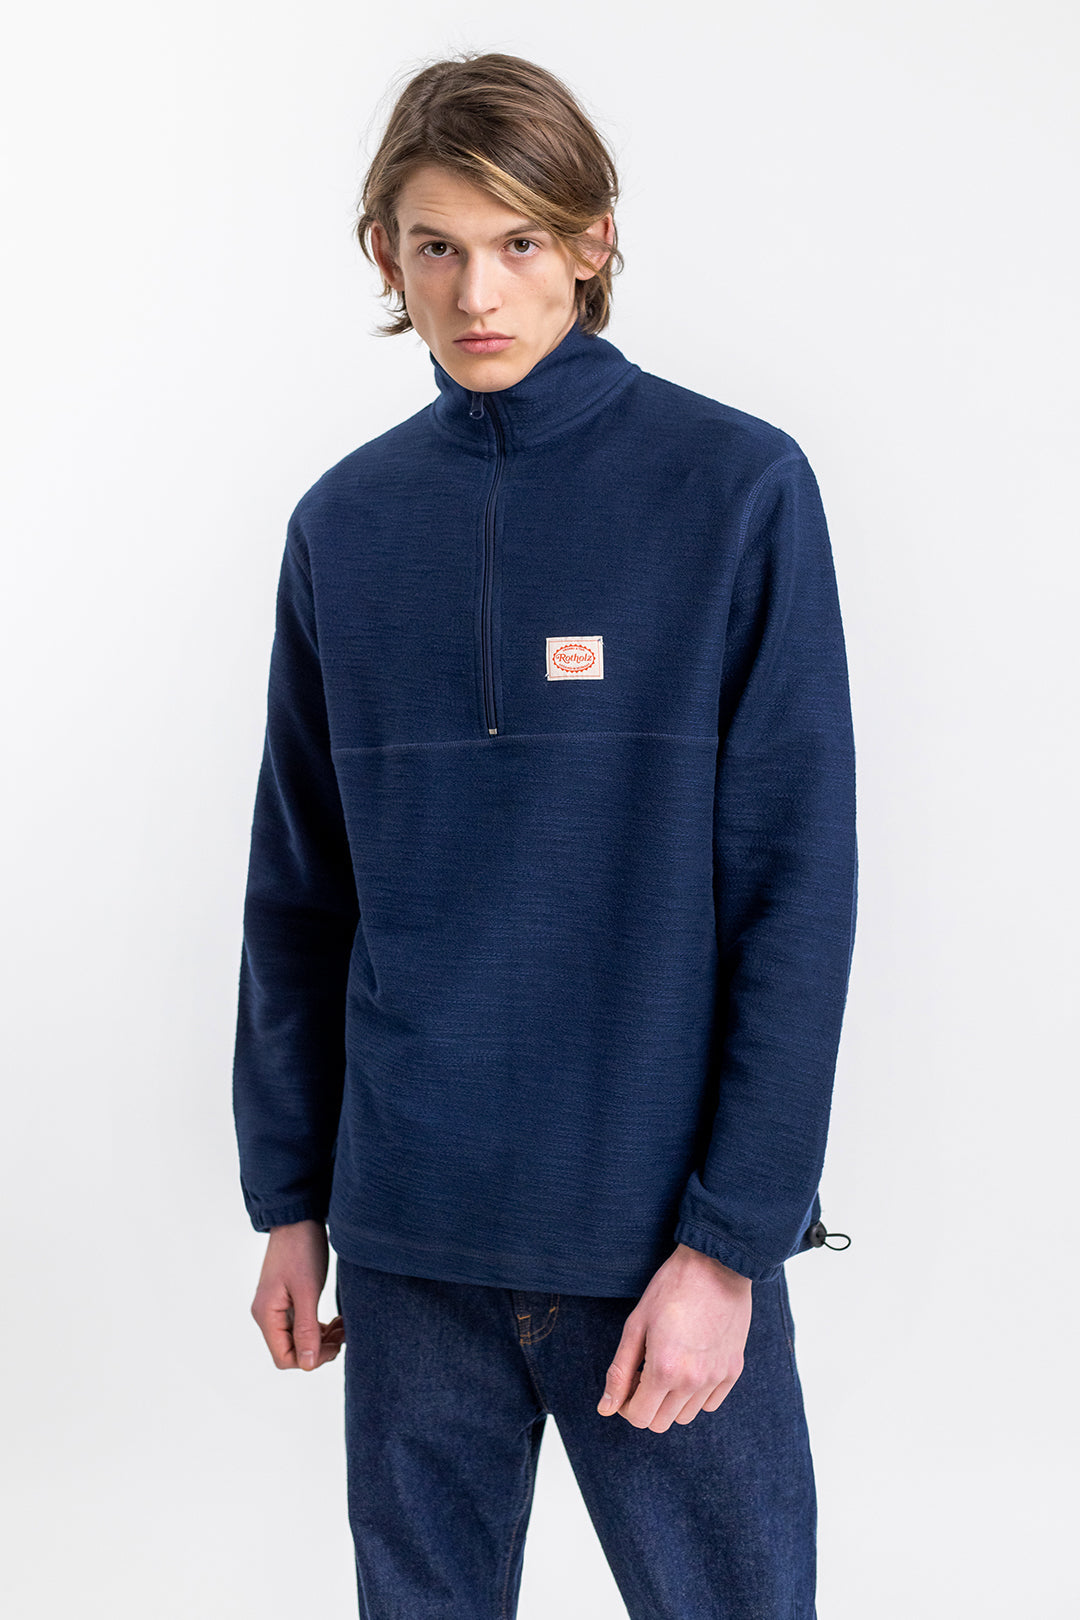 Männer Model trägt das Rotholz Half Zip Sweatshirt aus Bio-Baumwolle in Blau